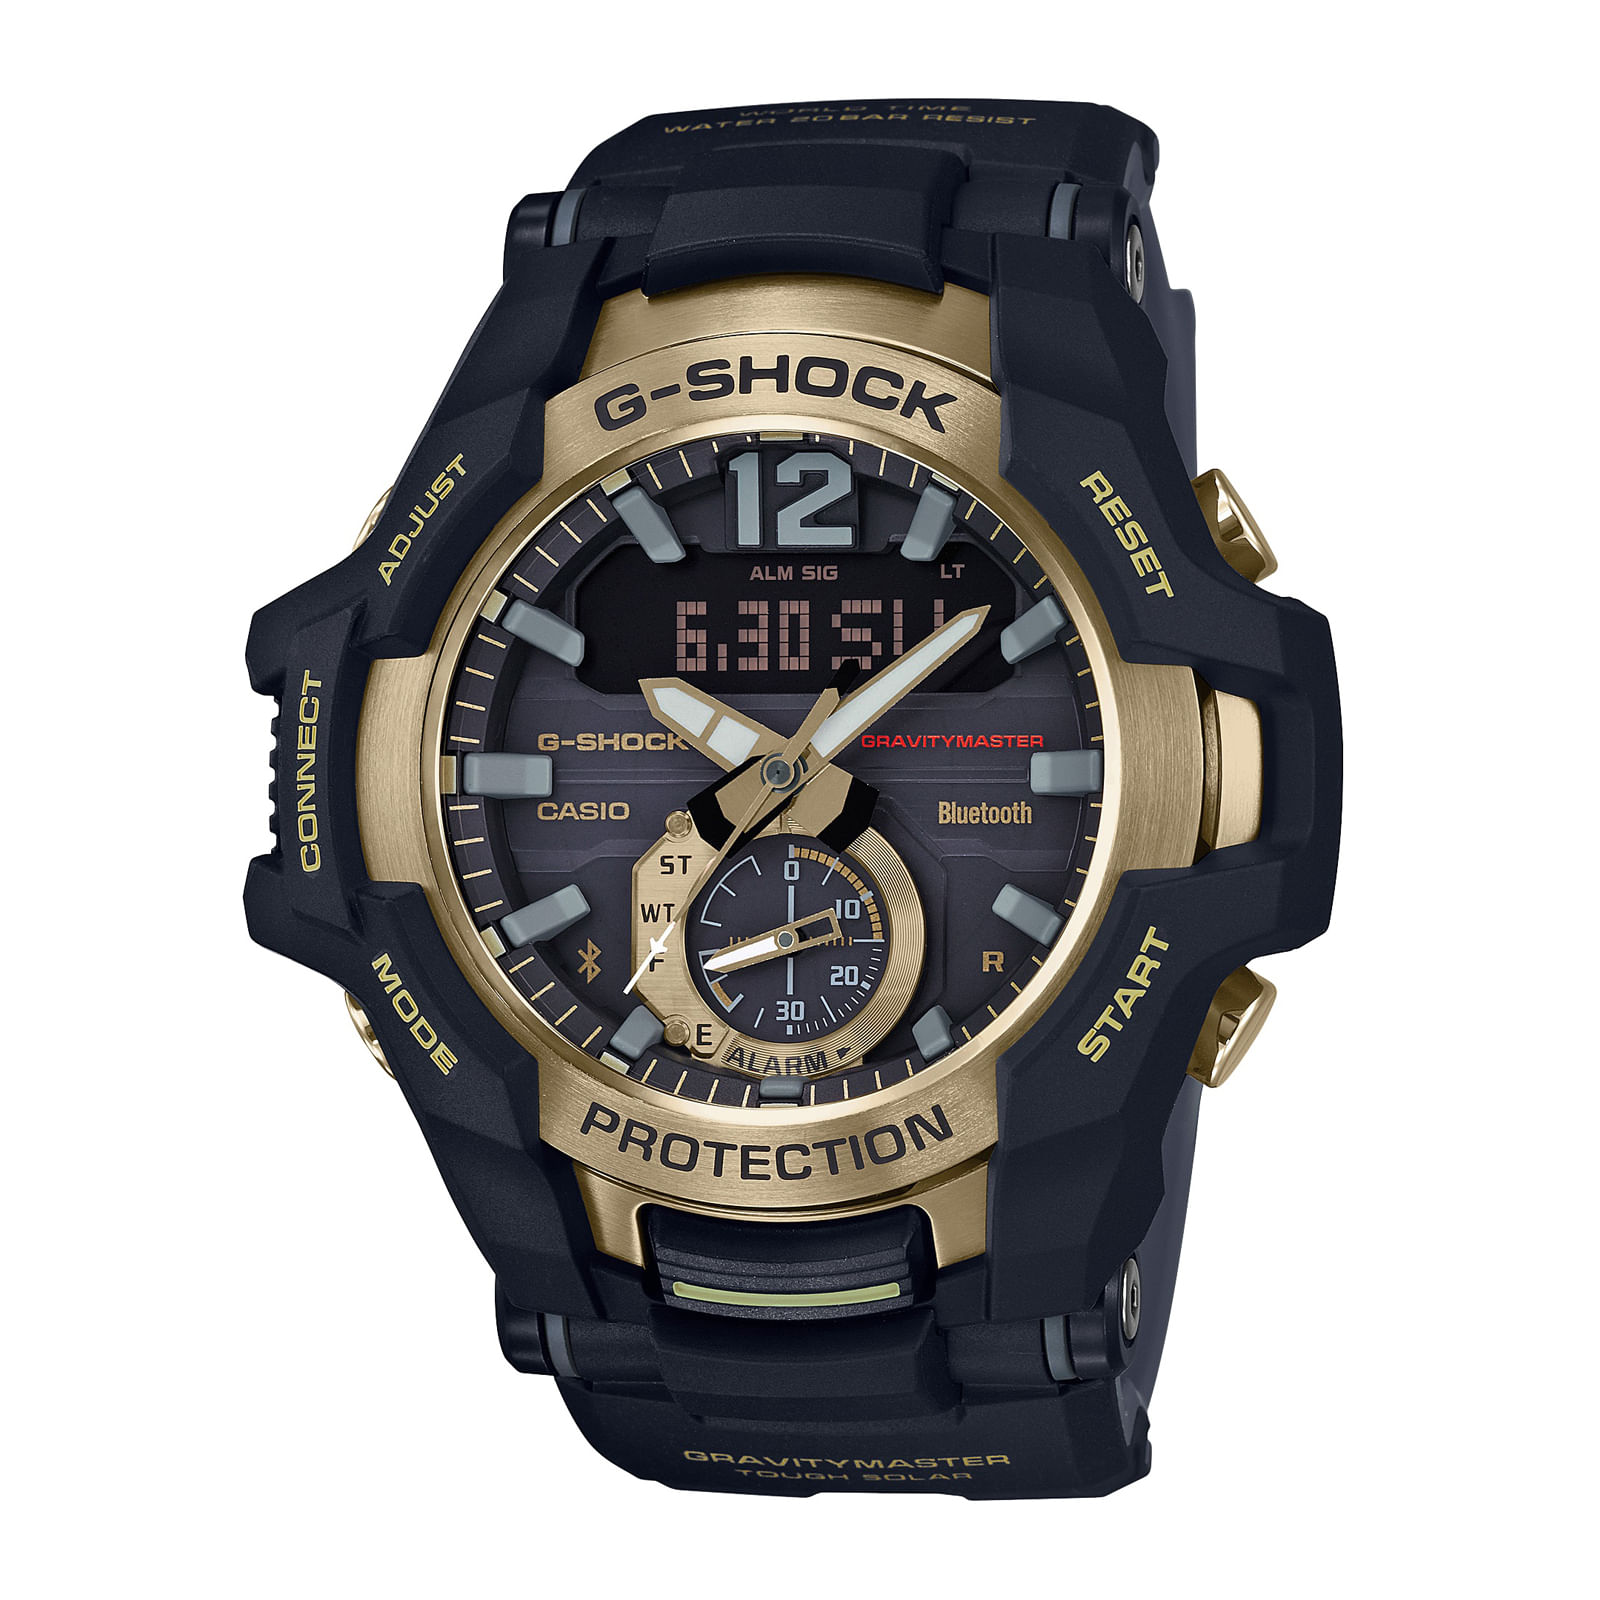 Reloj G-SHOCK GR-B100GB-1A Resina/Acero Hombre Negro/Dorado